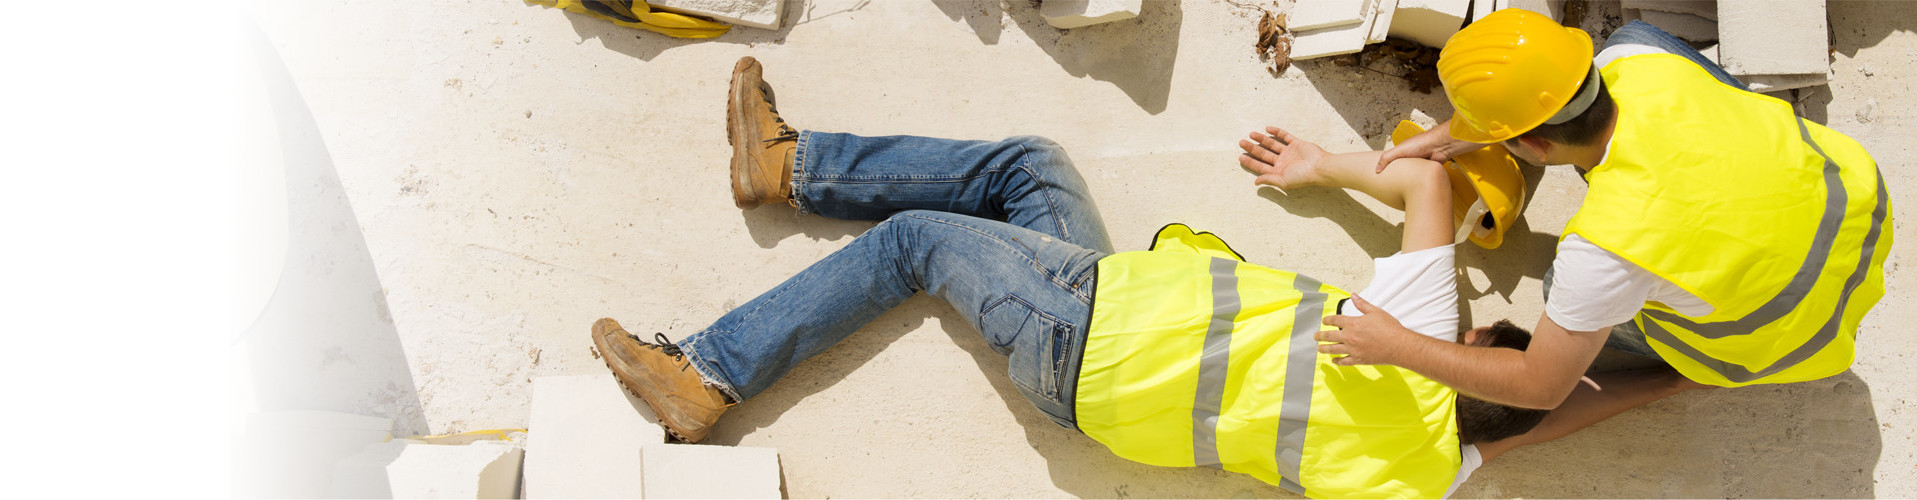 Ein Arbeiter auf der Baustelle beugt sich über einen zweiten Arbeiter, der am Boden liegt